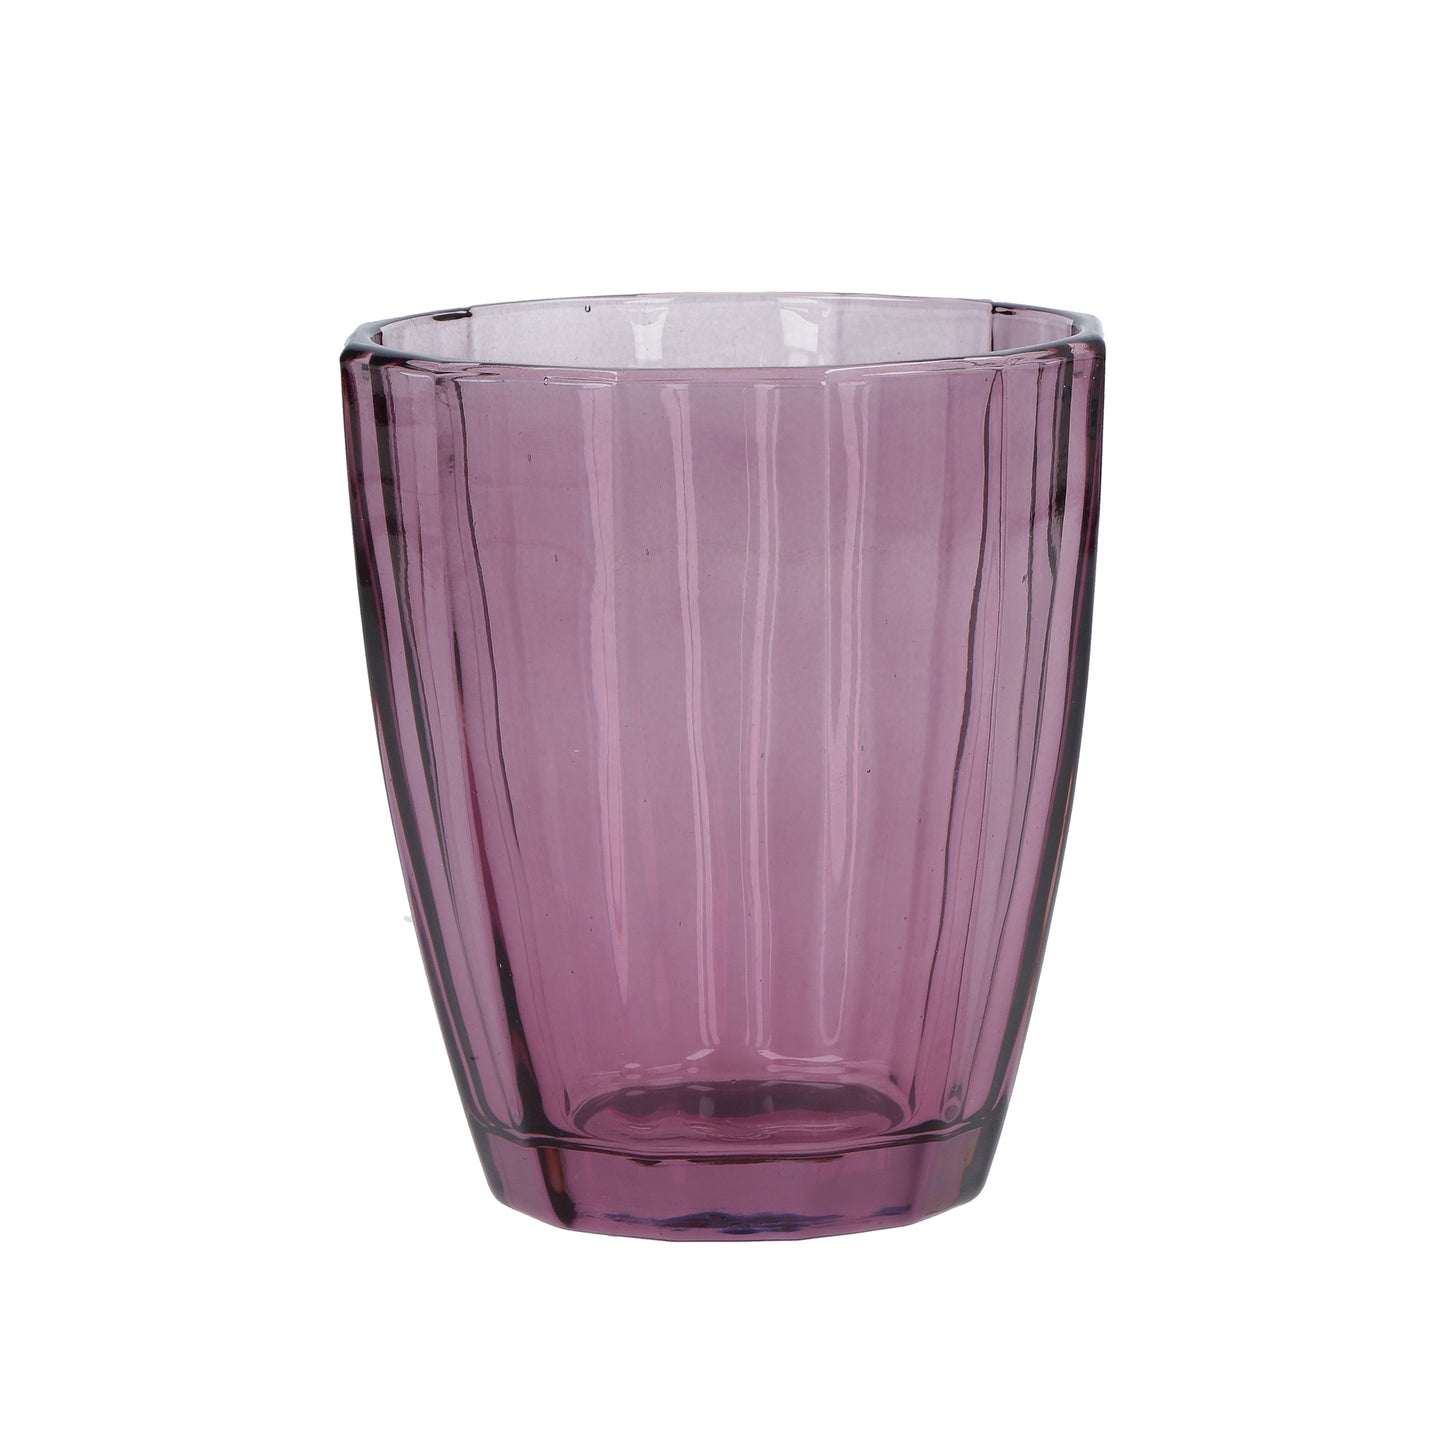 Confezione 6 bicchieri in vetro vinaccia cc 320 - cm Ø 8,5 - h 10. lavabile in lavastoviglie. In negozio e online su tuttochic.it